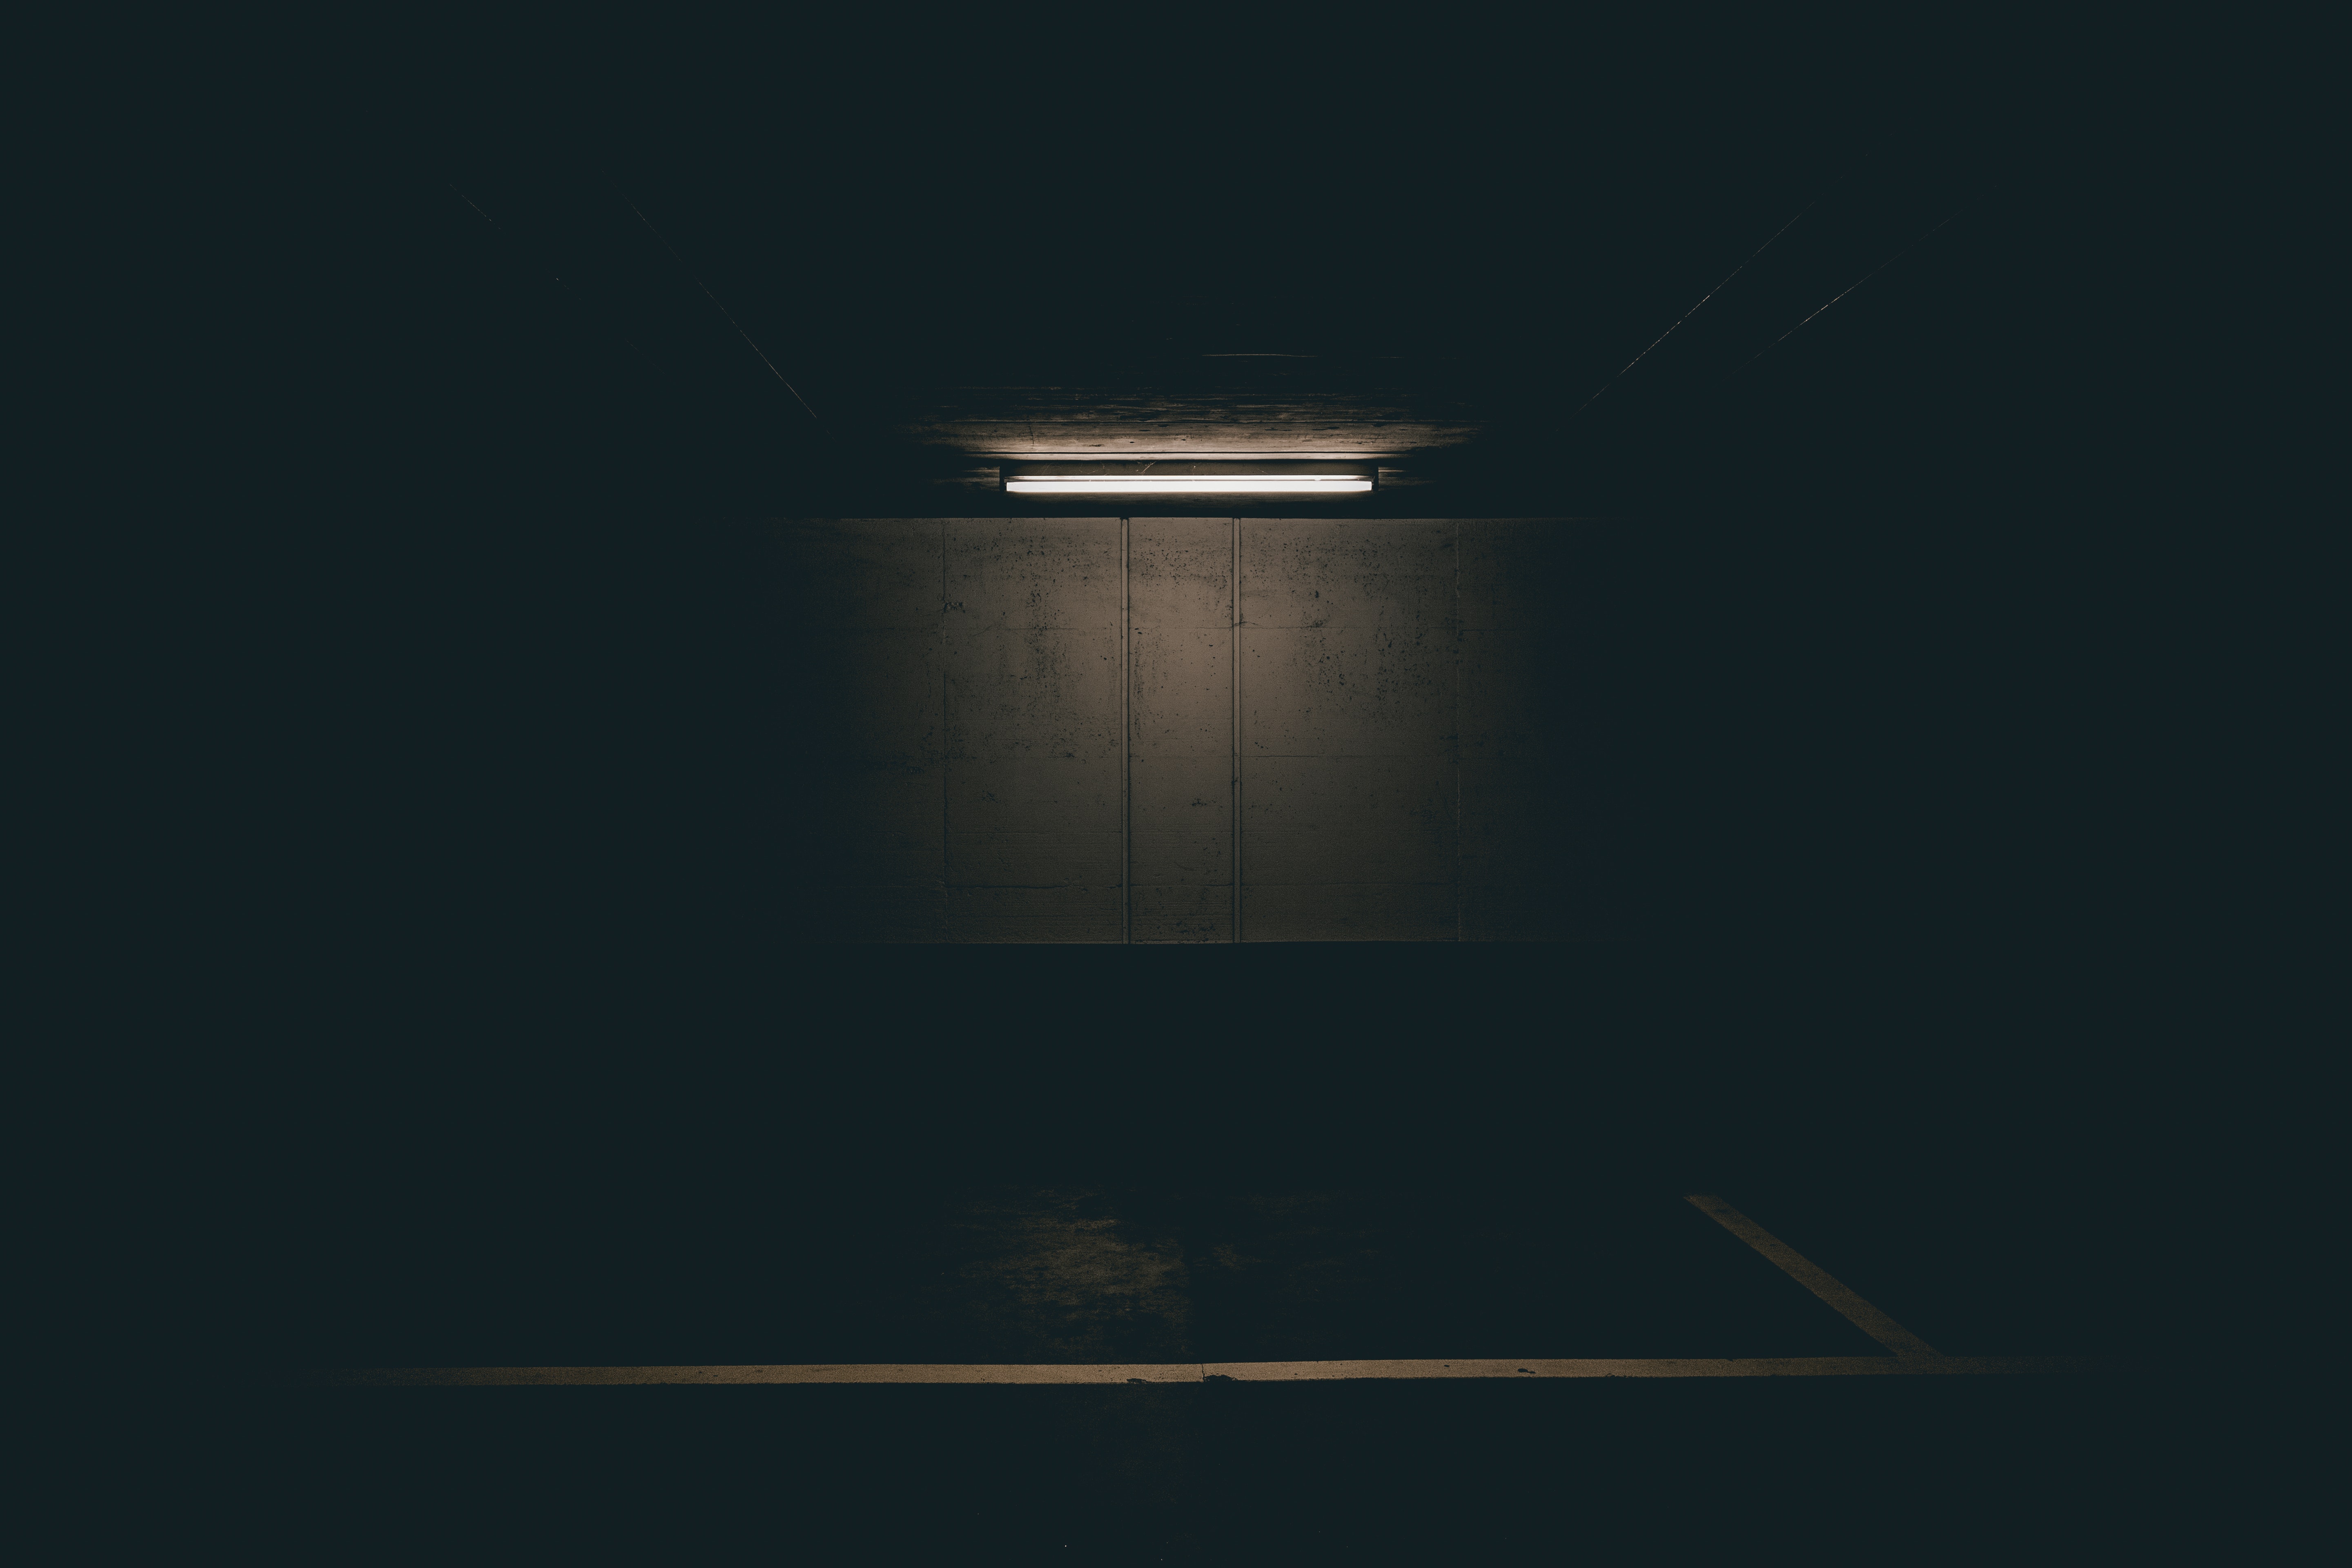 General 5760x3840 dark background dark spotlights black parking garage